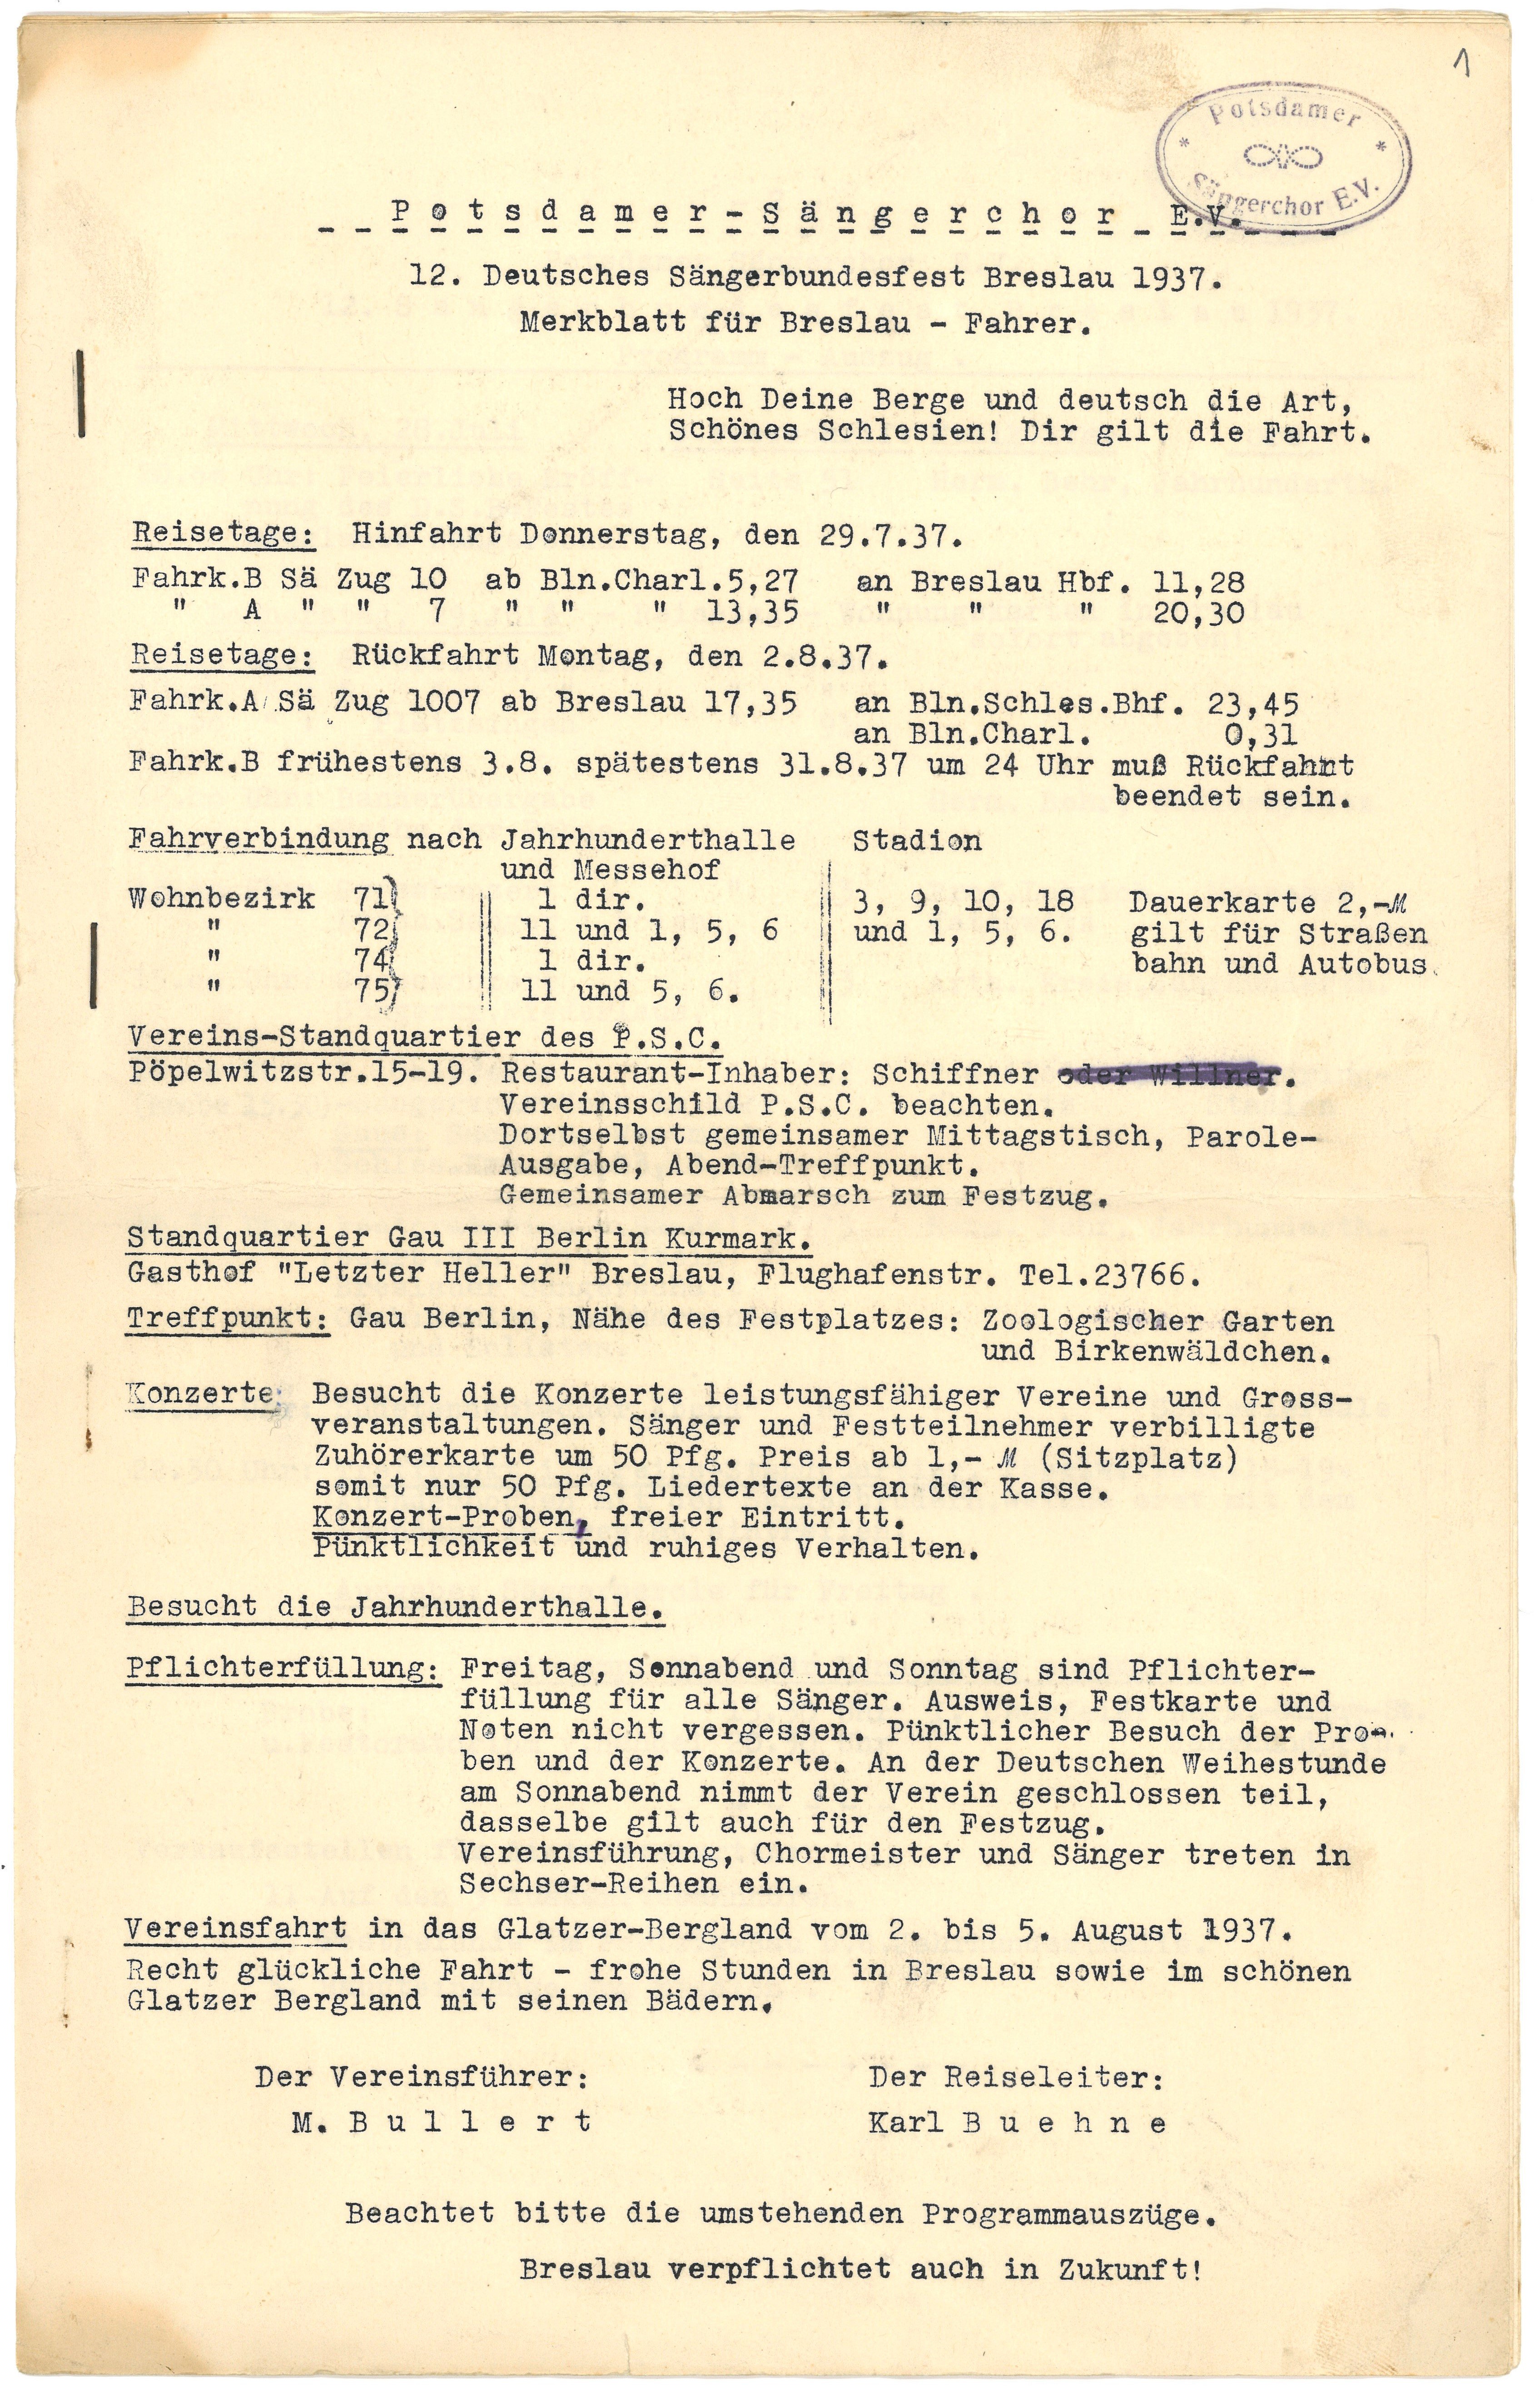 Merkblatt des Potsdamer Sängerchors E.V. für die Teilnehmer des 12. Deutschen Sängerbundesfests Breslau 1937 (Landesgeschichtliche Vereinigung für die Mark Brandenburg e.V., Archiv CC BY)